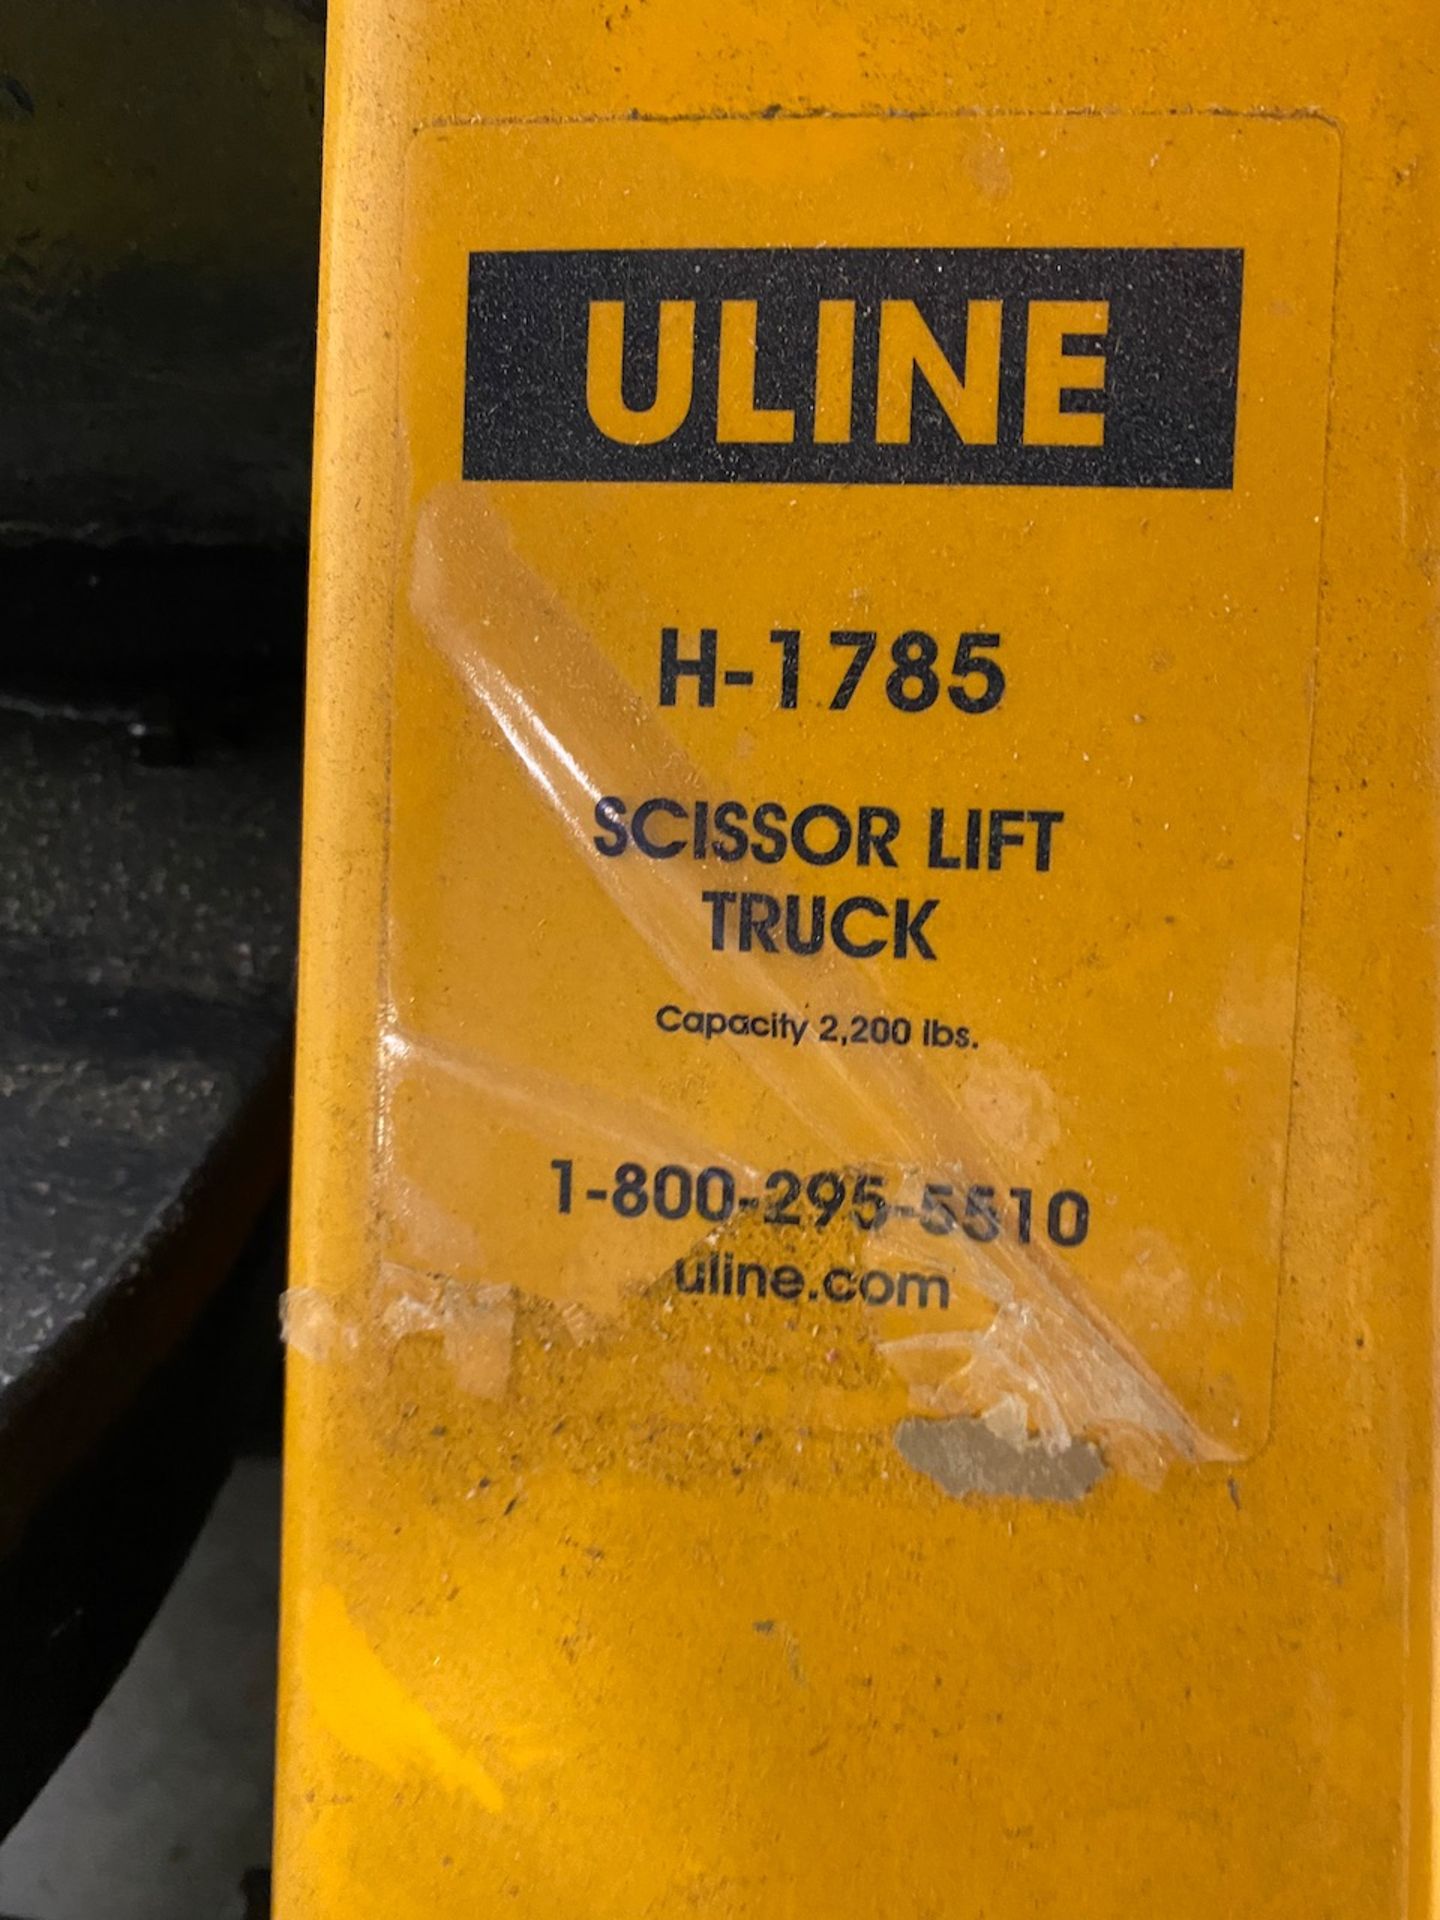 Uline scissor truck lift - Image 2 of 3